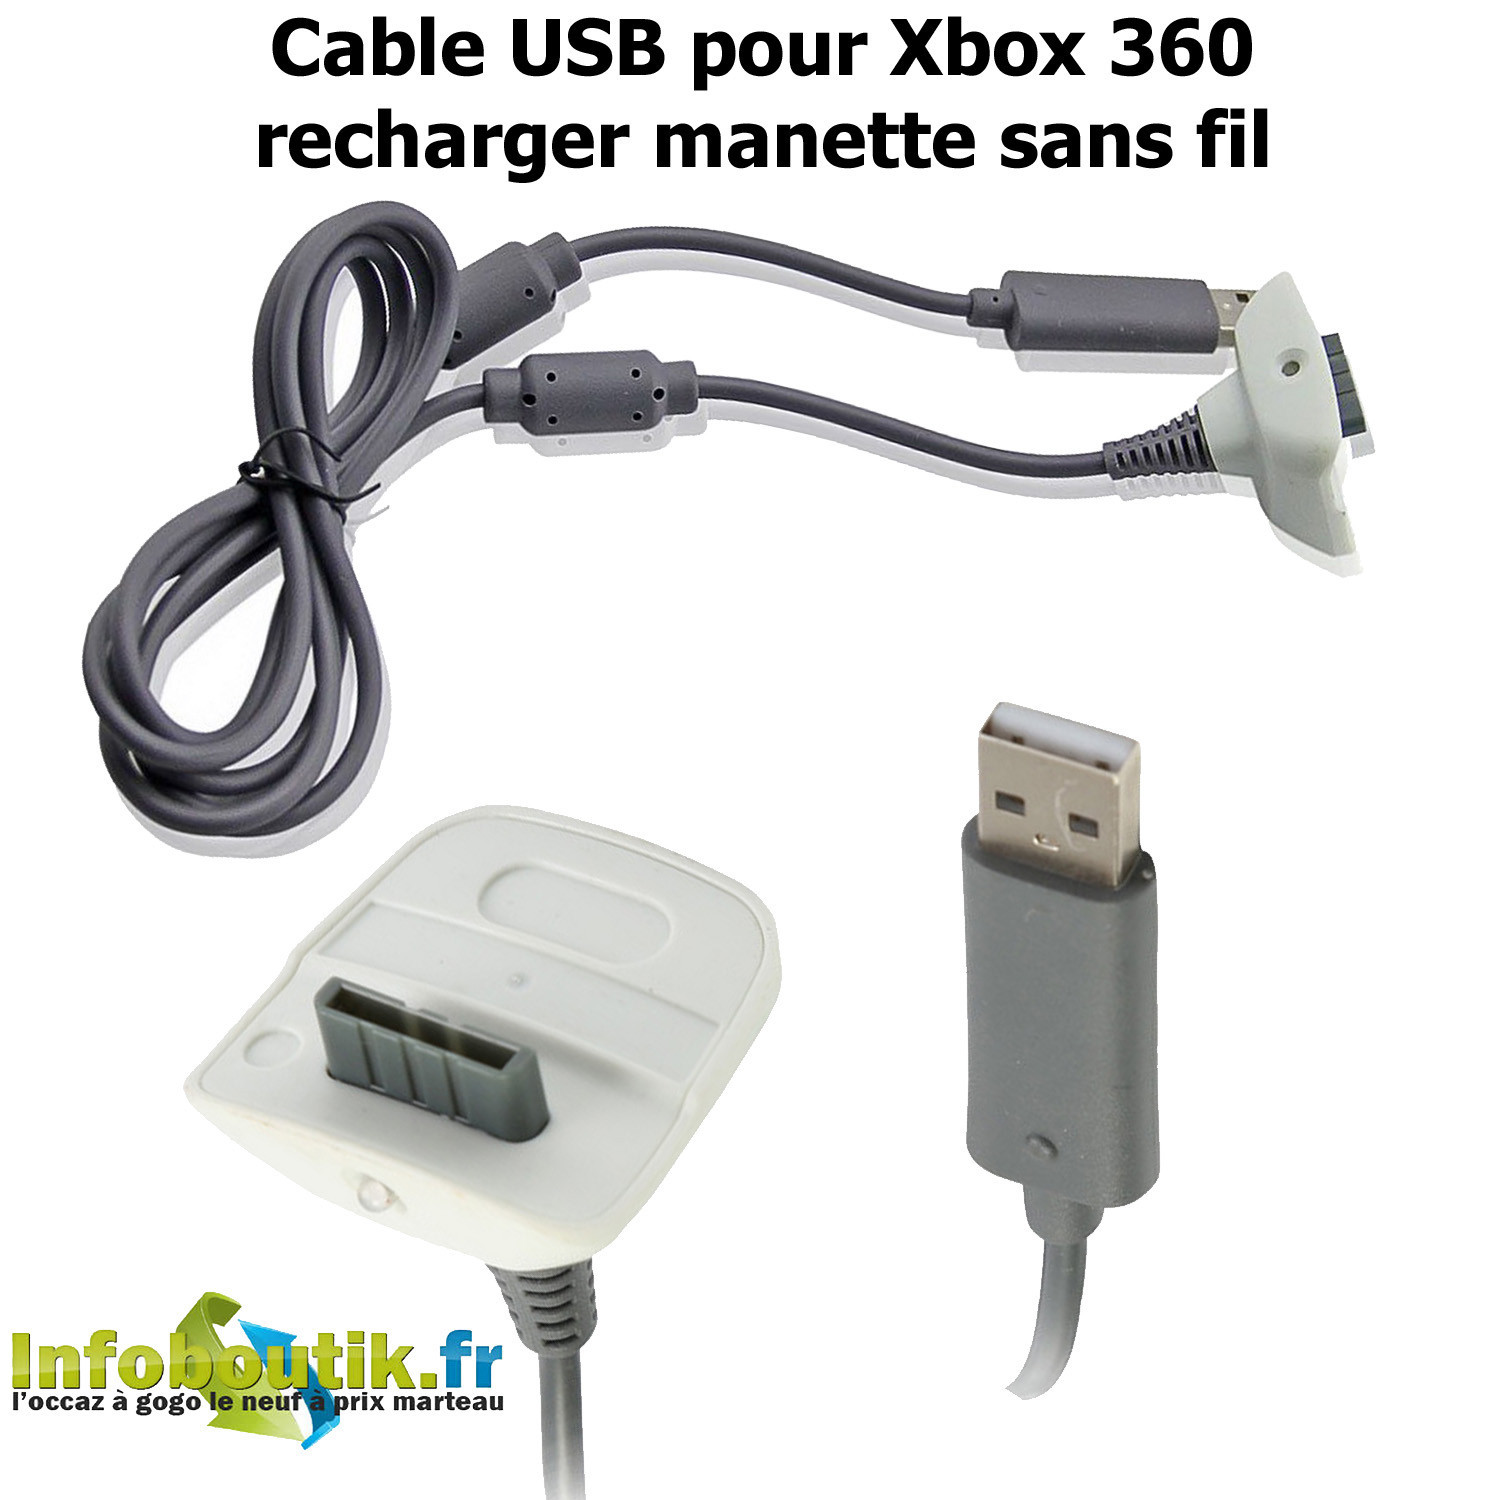 Cable USB adaptateur convertisseur pour manette XBOX 360 sur PC (NEUF)